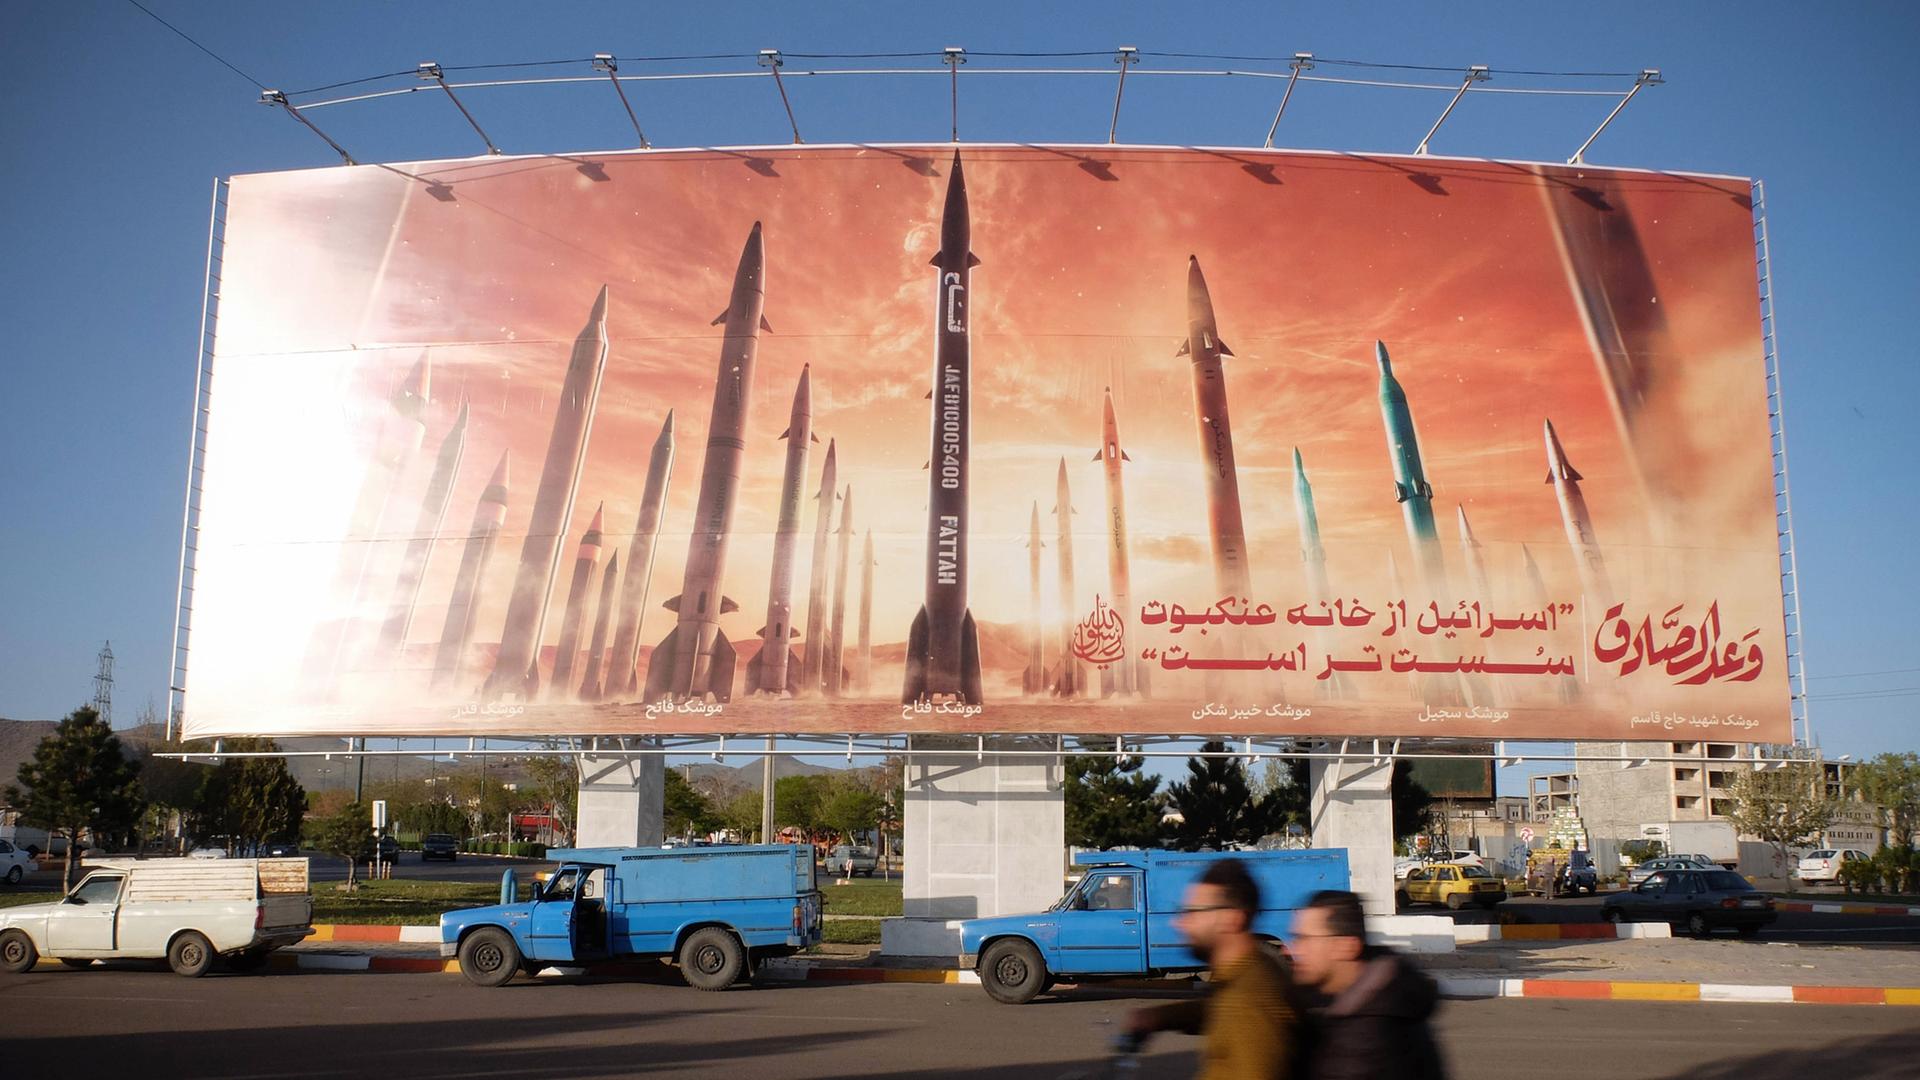 Autofahrer fahren an einer anti-israelischen Werbetafel vorbei, auf der Bilder iranischer Raketen und ein Satz auf Persisch zu lesen sind: "Israel ist schwächer als die Spinne zu Hause in Zanjan, Iran." Iran, 25. April 2024.